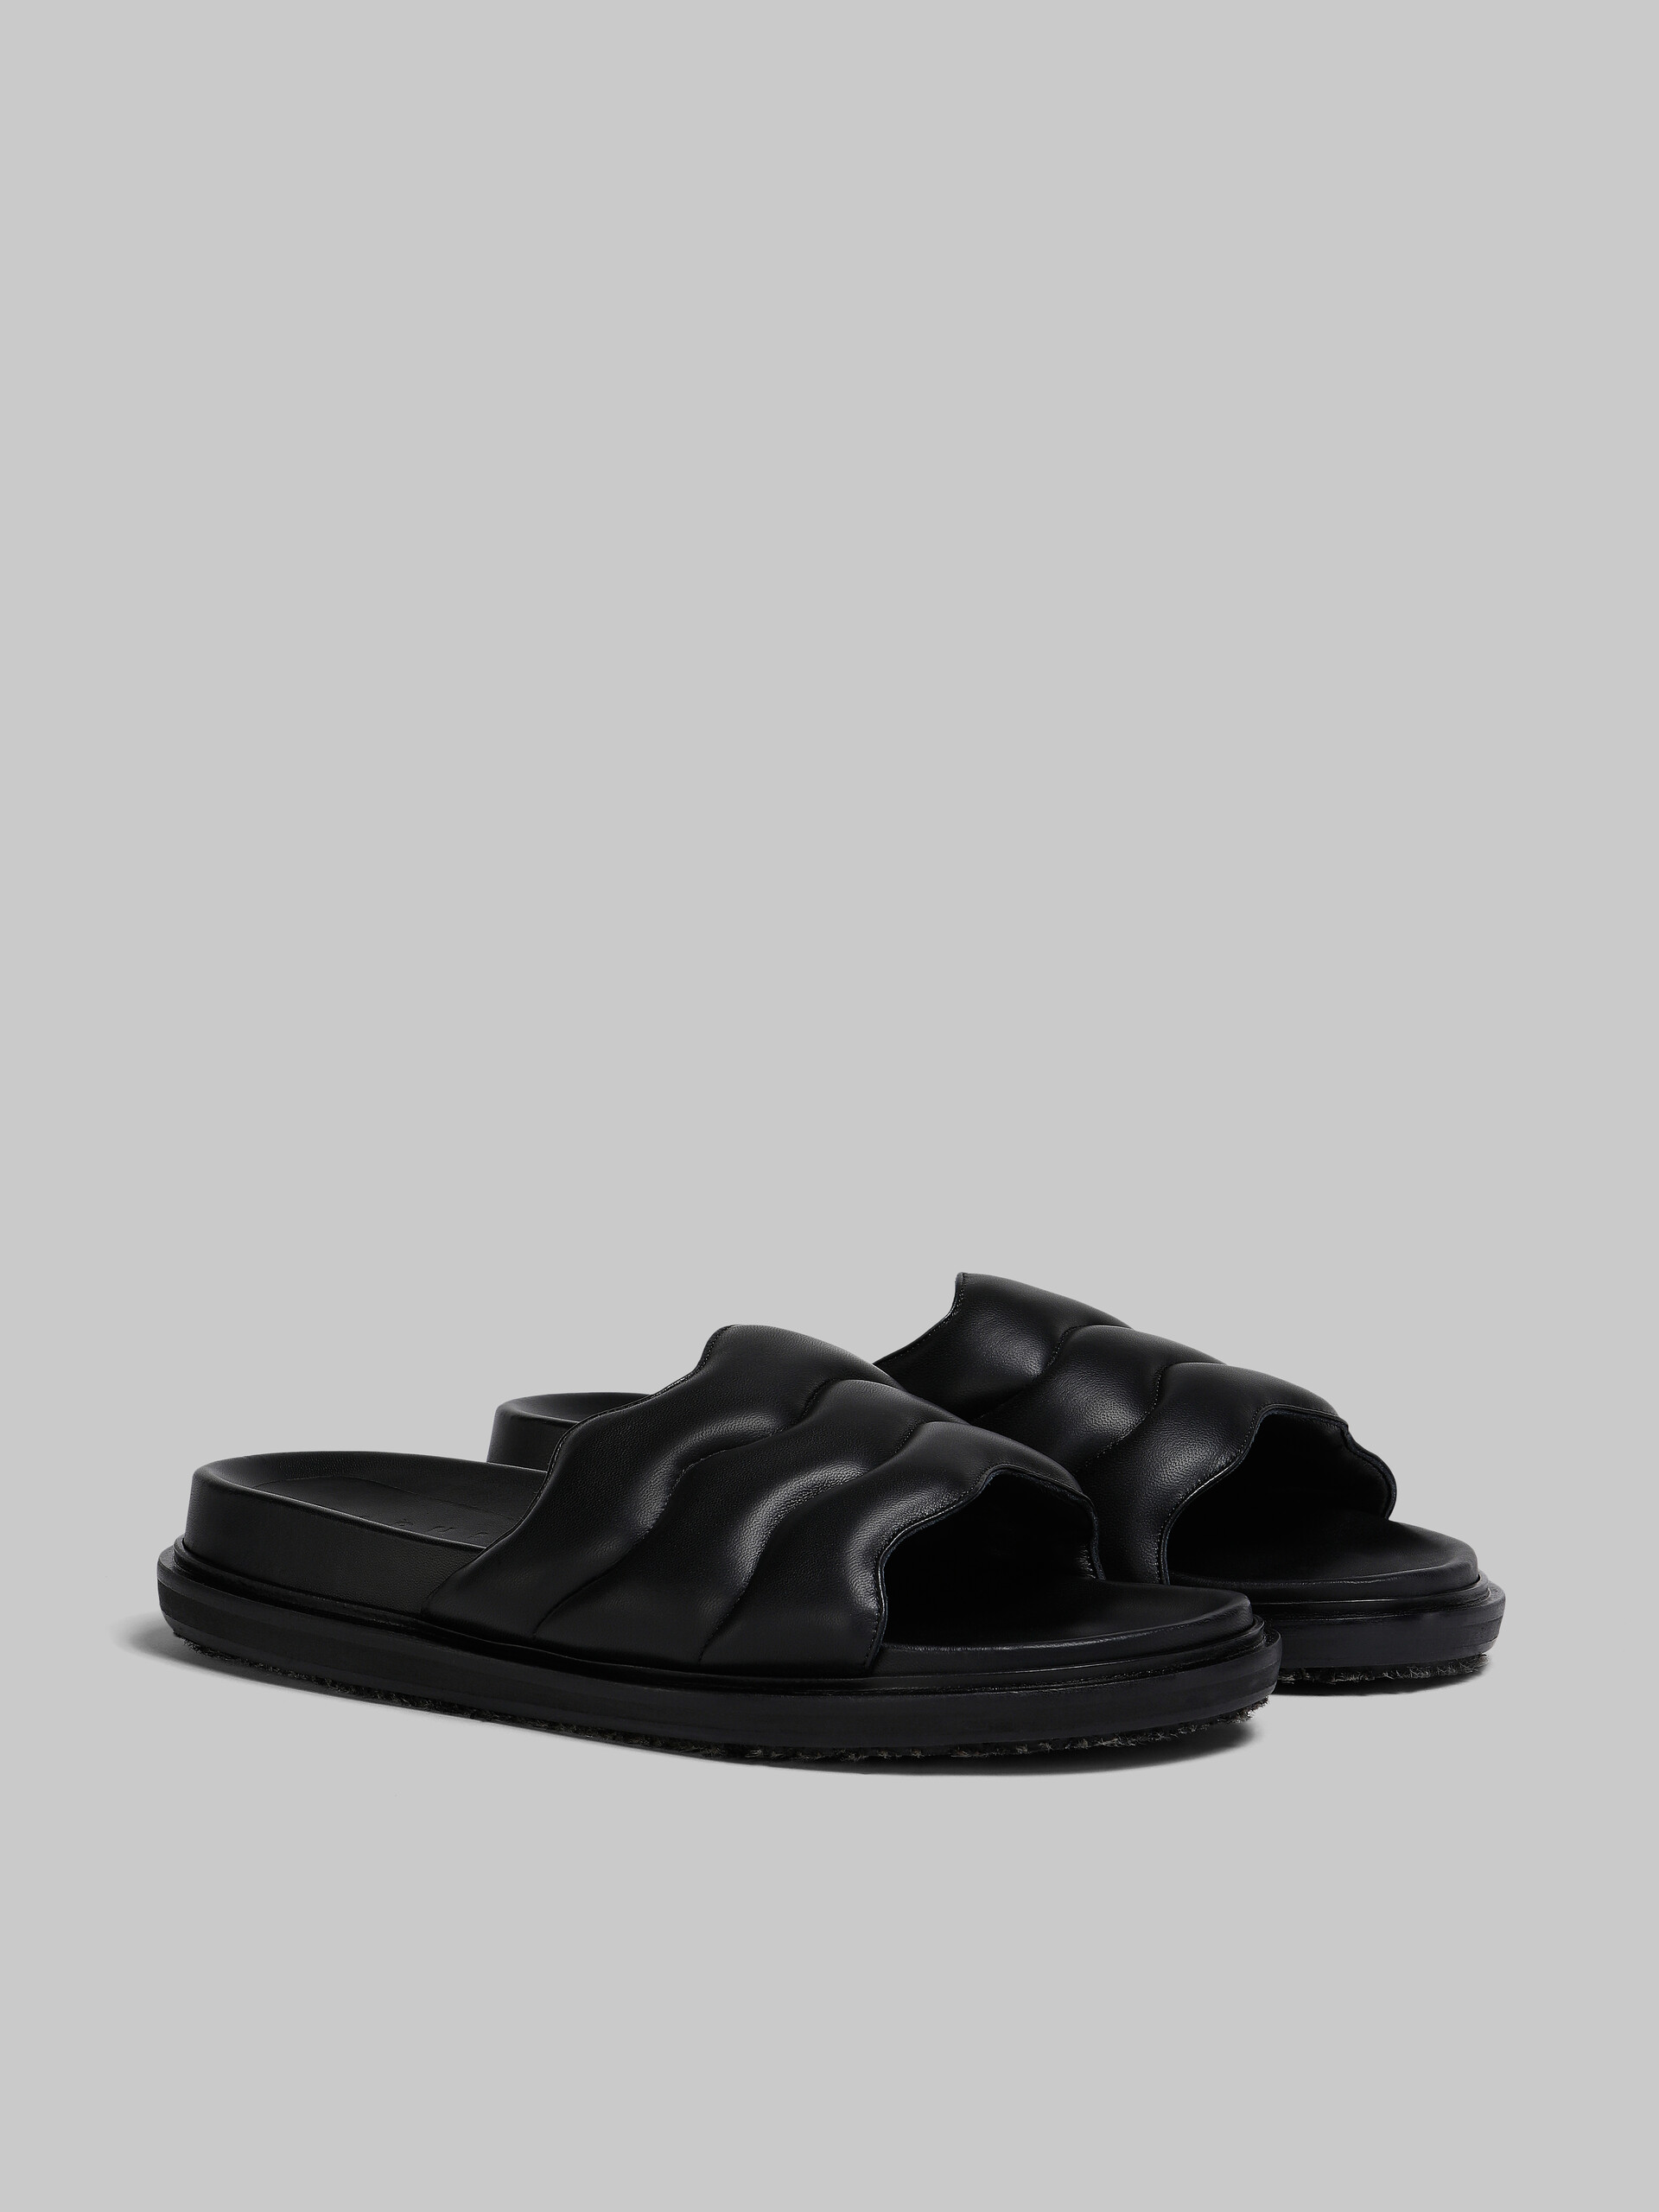 Black wavy leather slide sandal - Sandals - Image 2